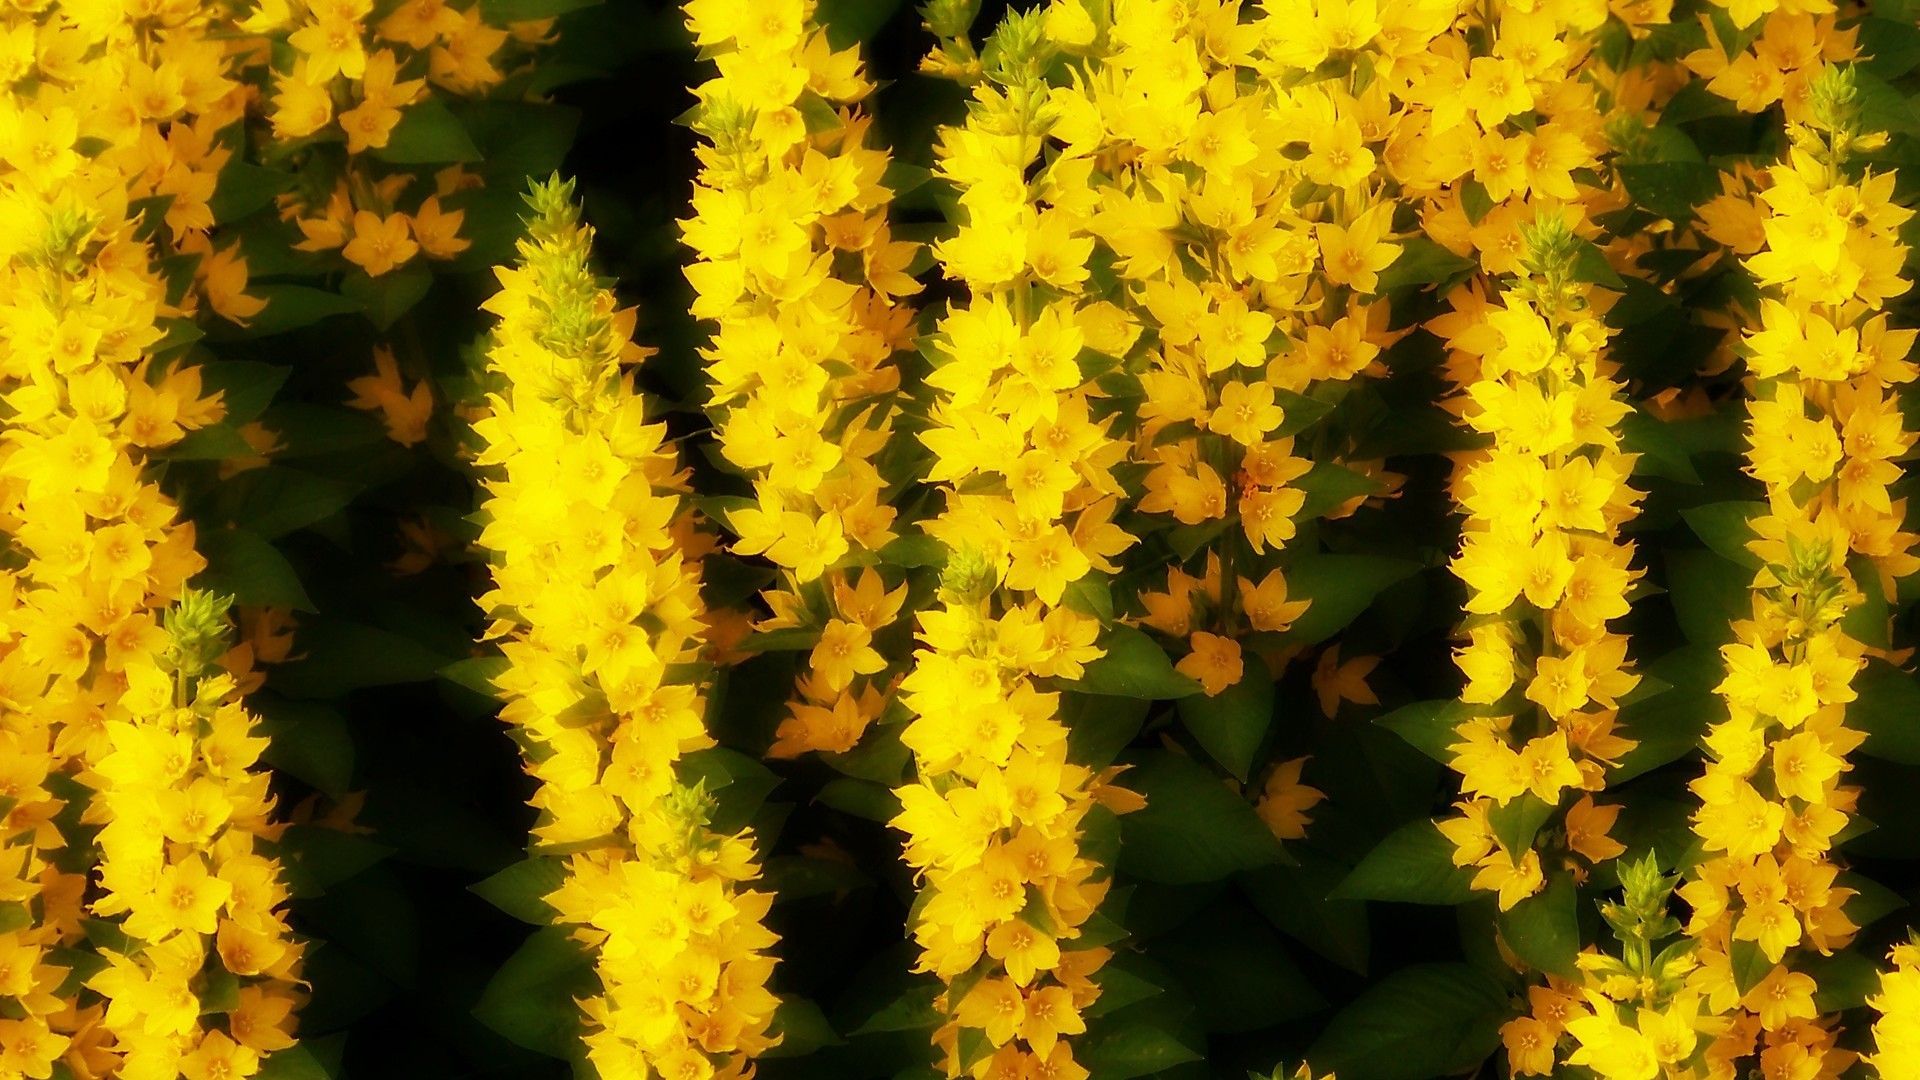 近距离拍摄野外的黄色花朵唯美风格桌面壁纸